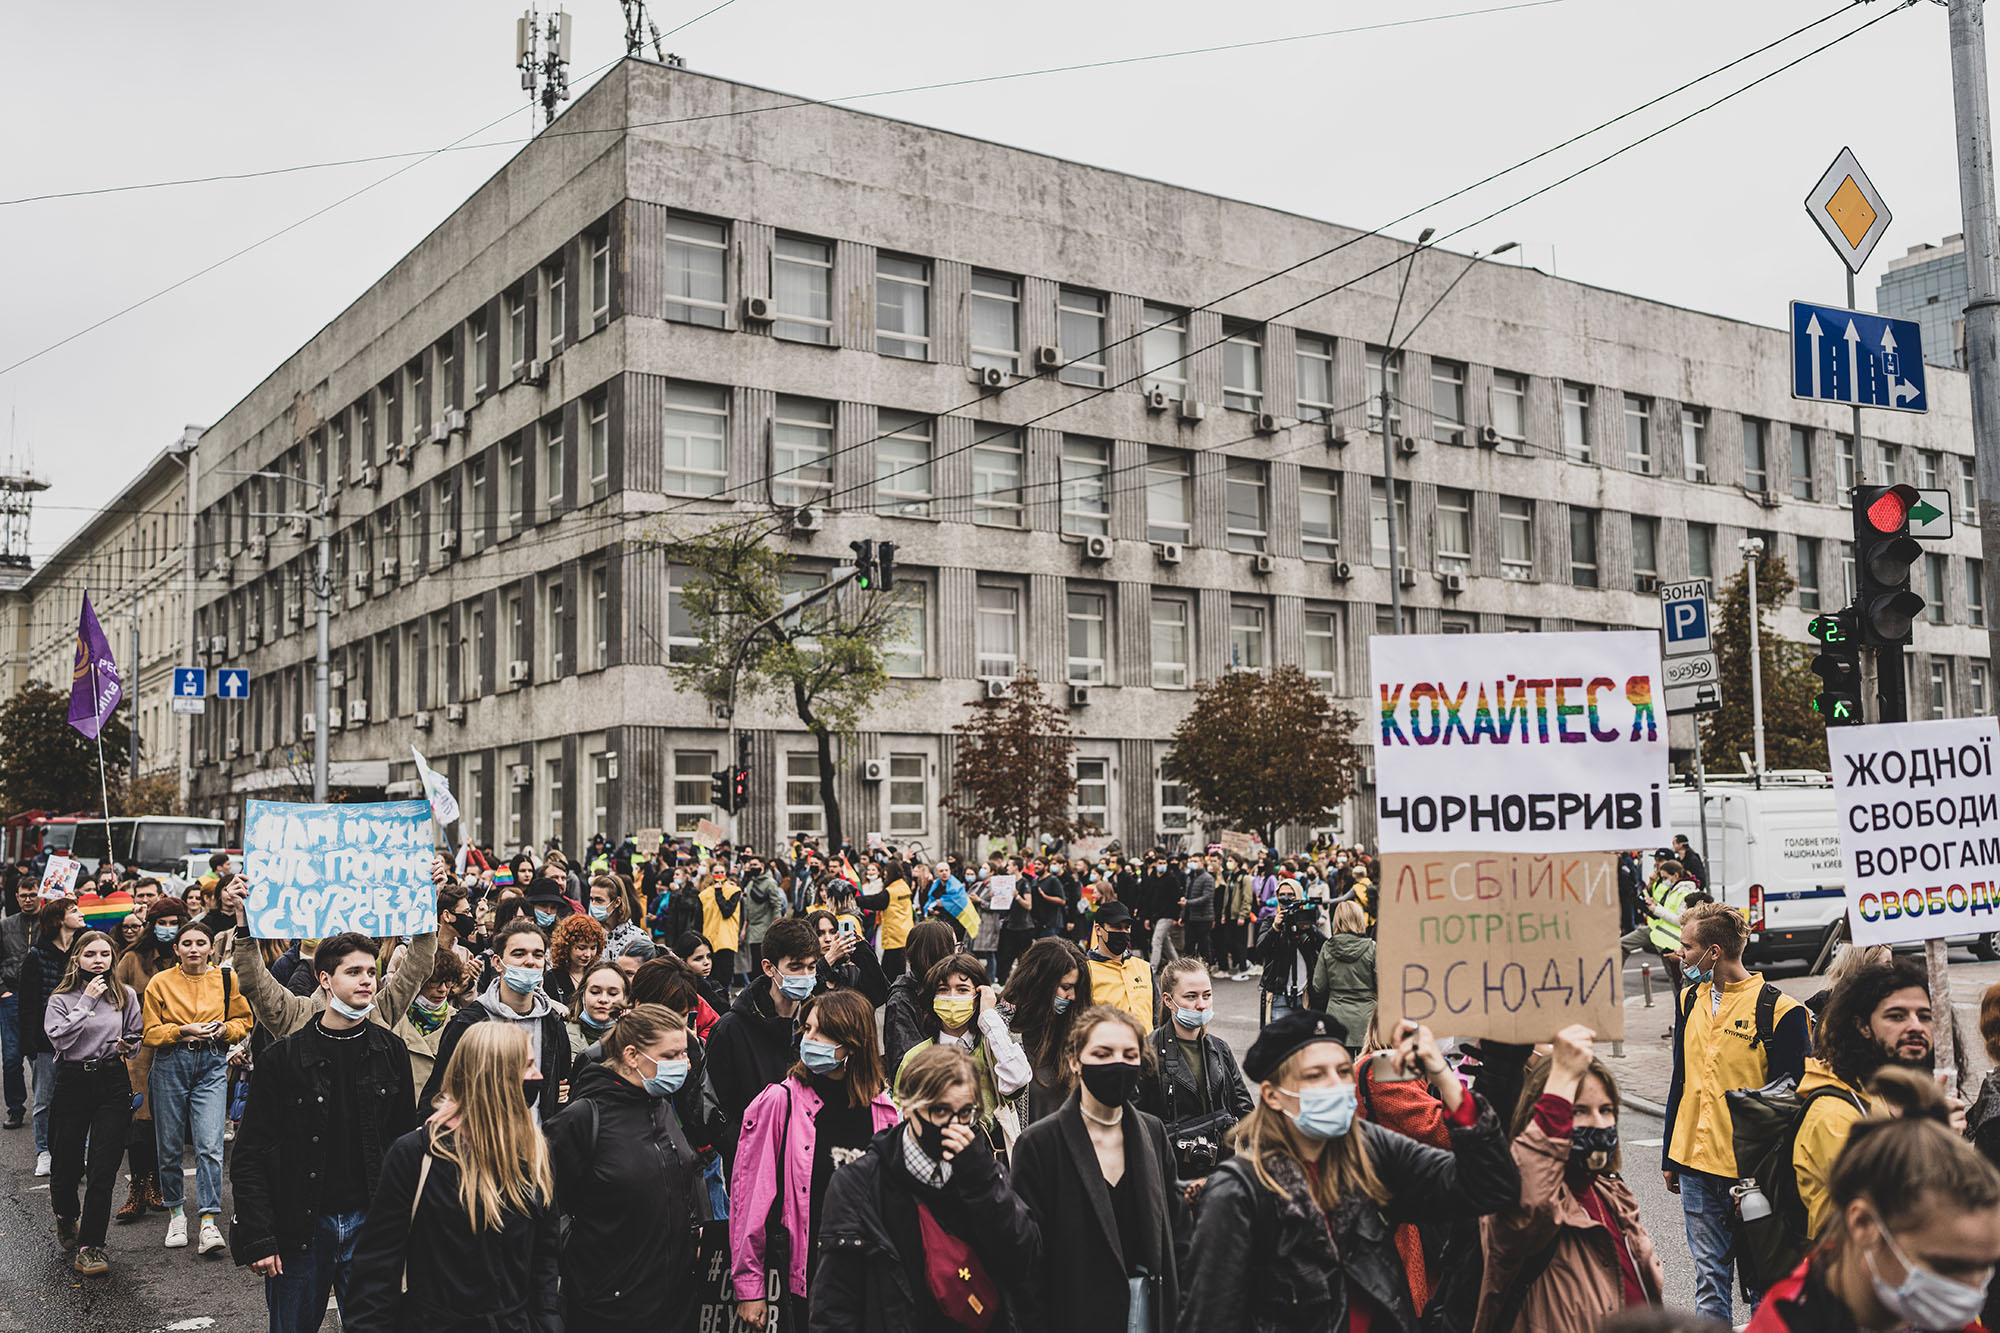 Марш Рівності Київ ЛГБТ прайд гей парад